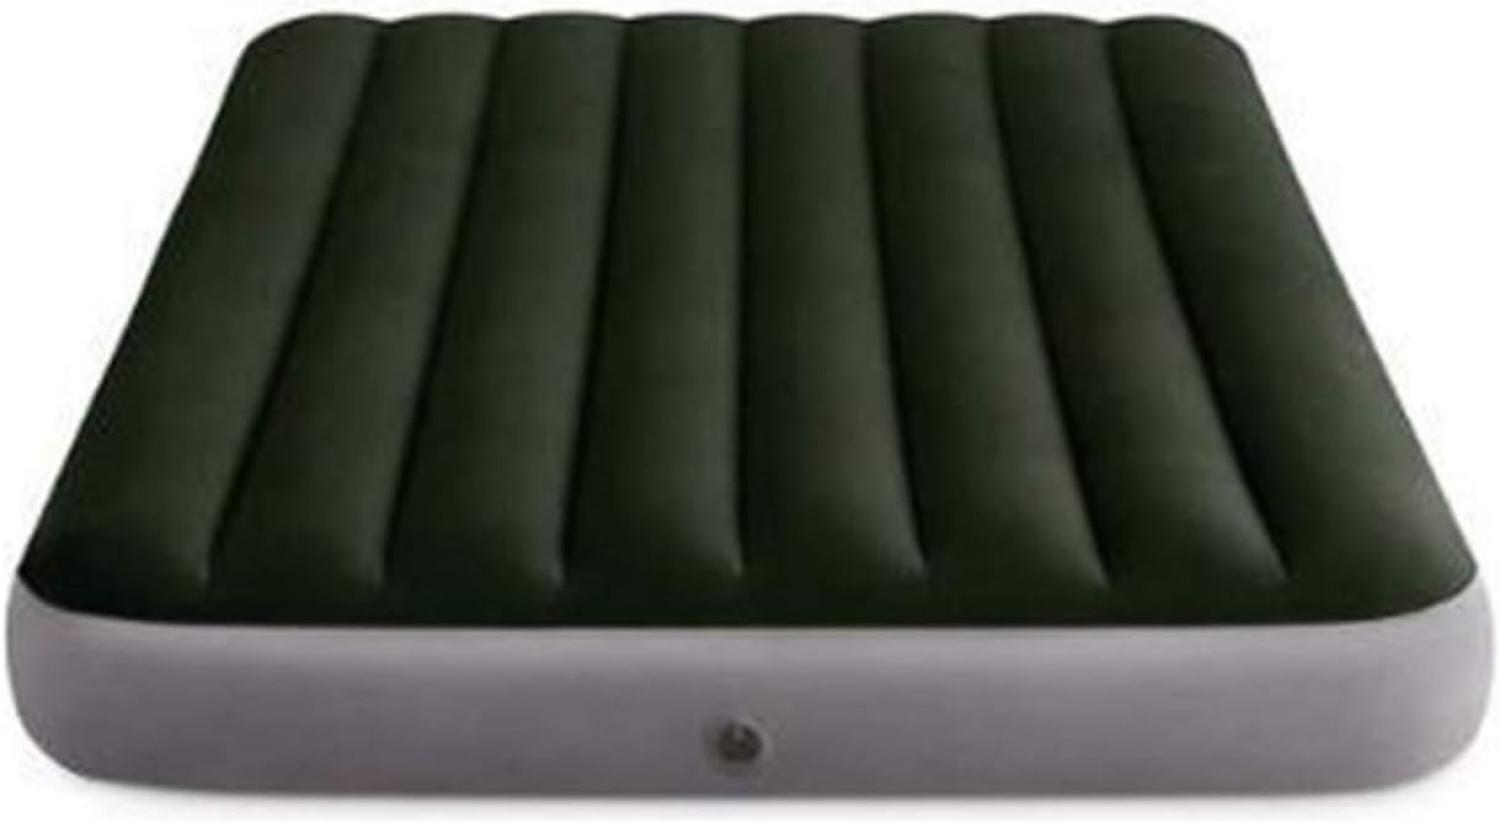 Intex Luftbett Dura-Beam Standard Series mit Batteriepumpe, Grün, 191 x 137 x 25 cm Bild 1